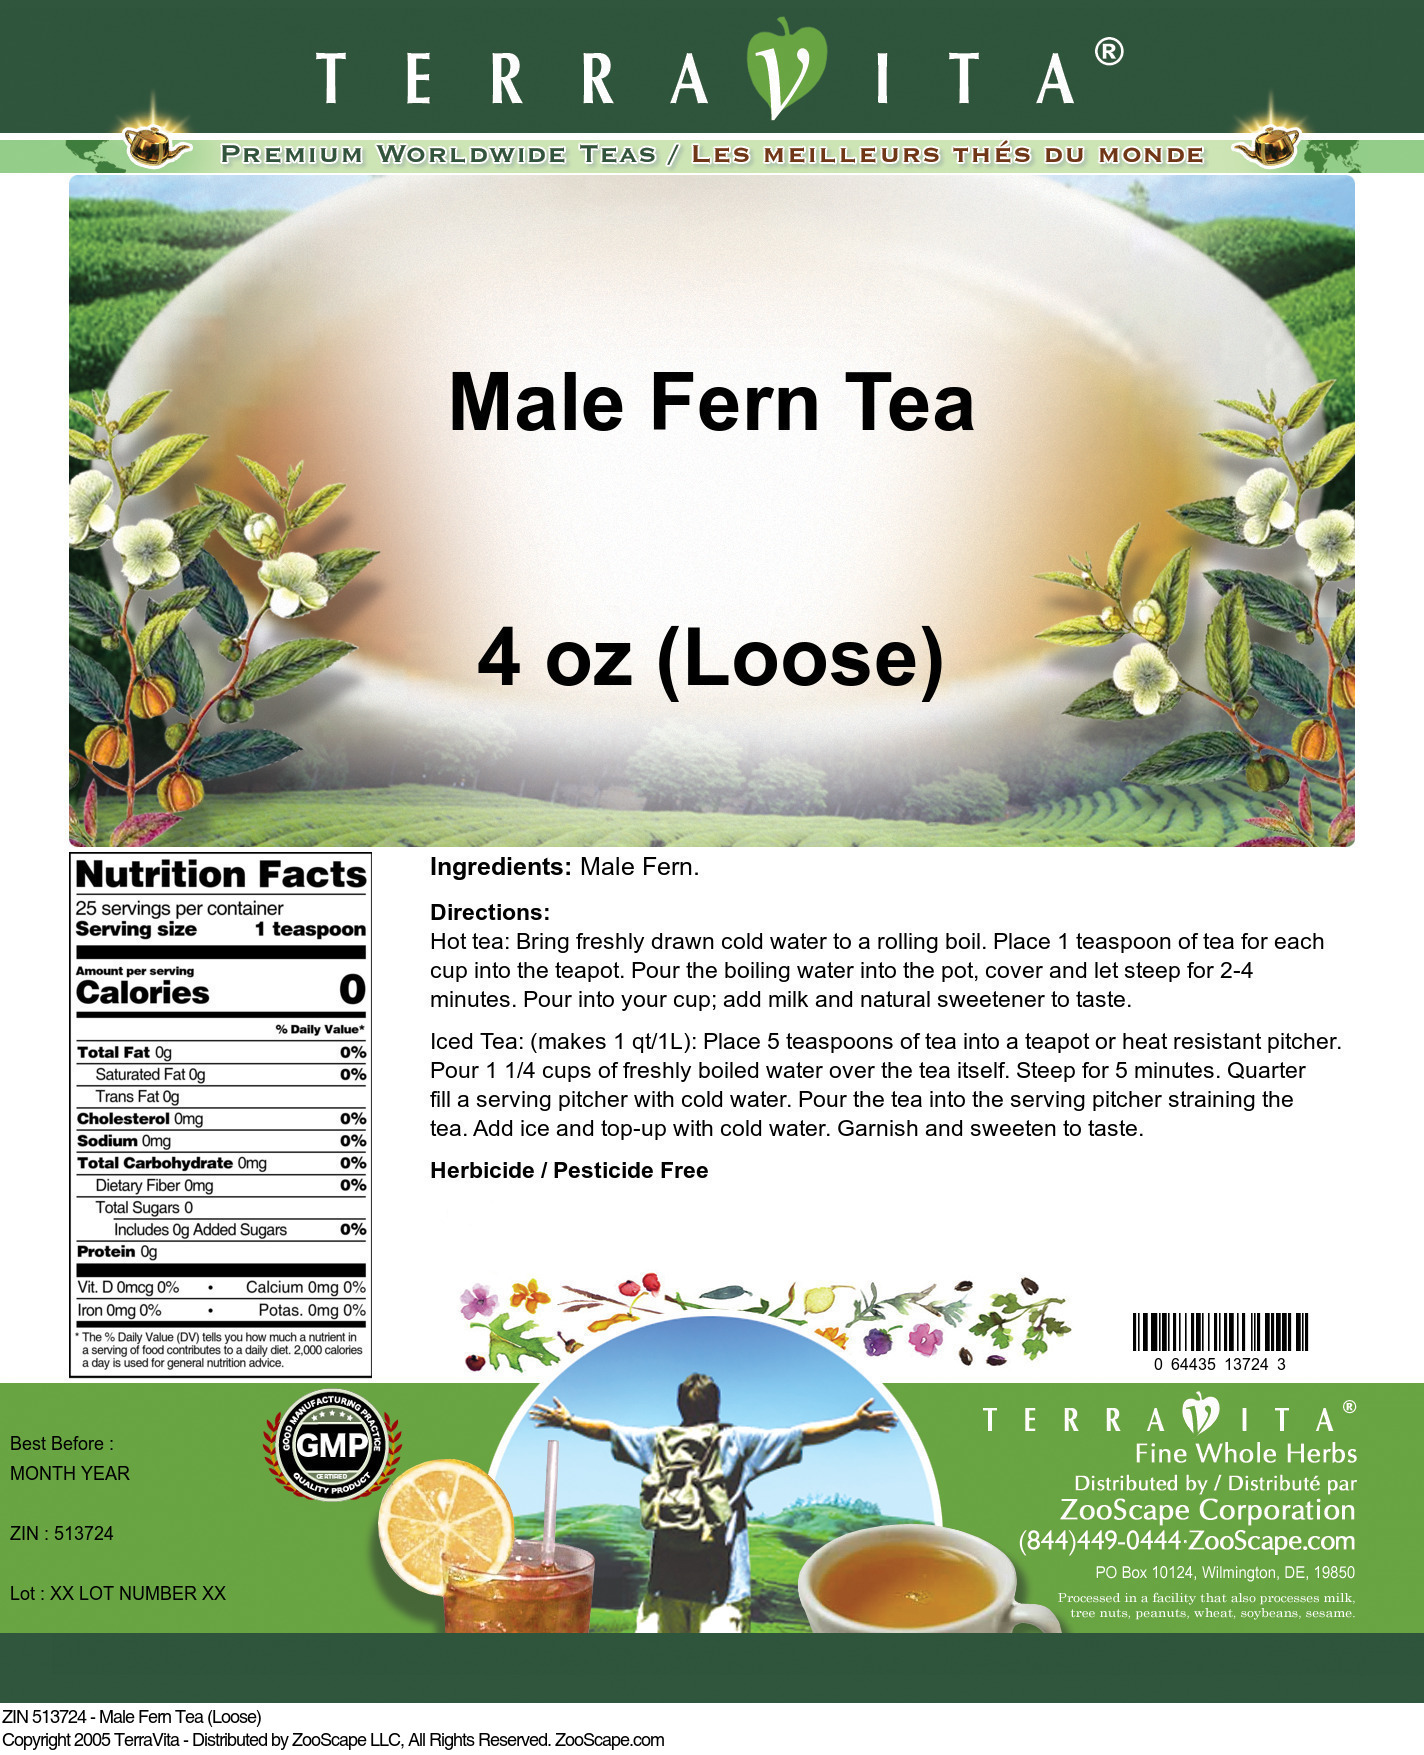 Male Fern Tea (Loose) - Label